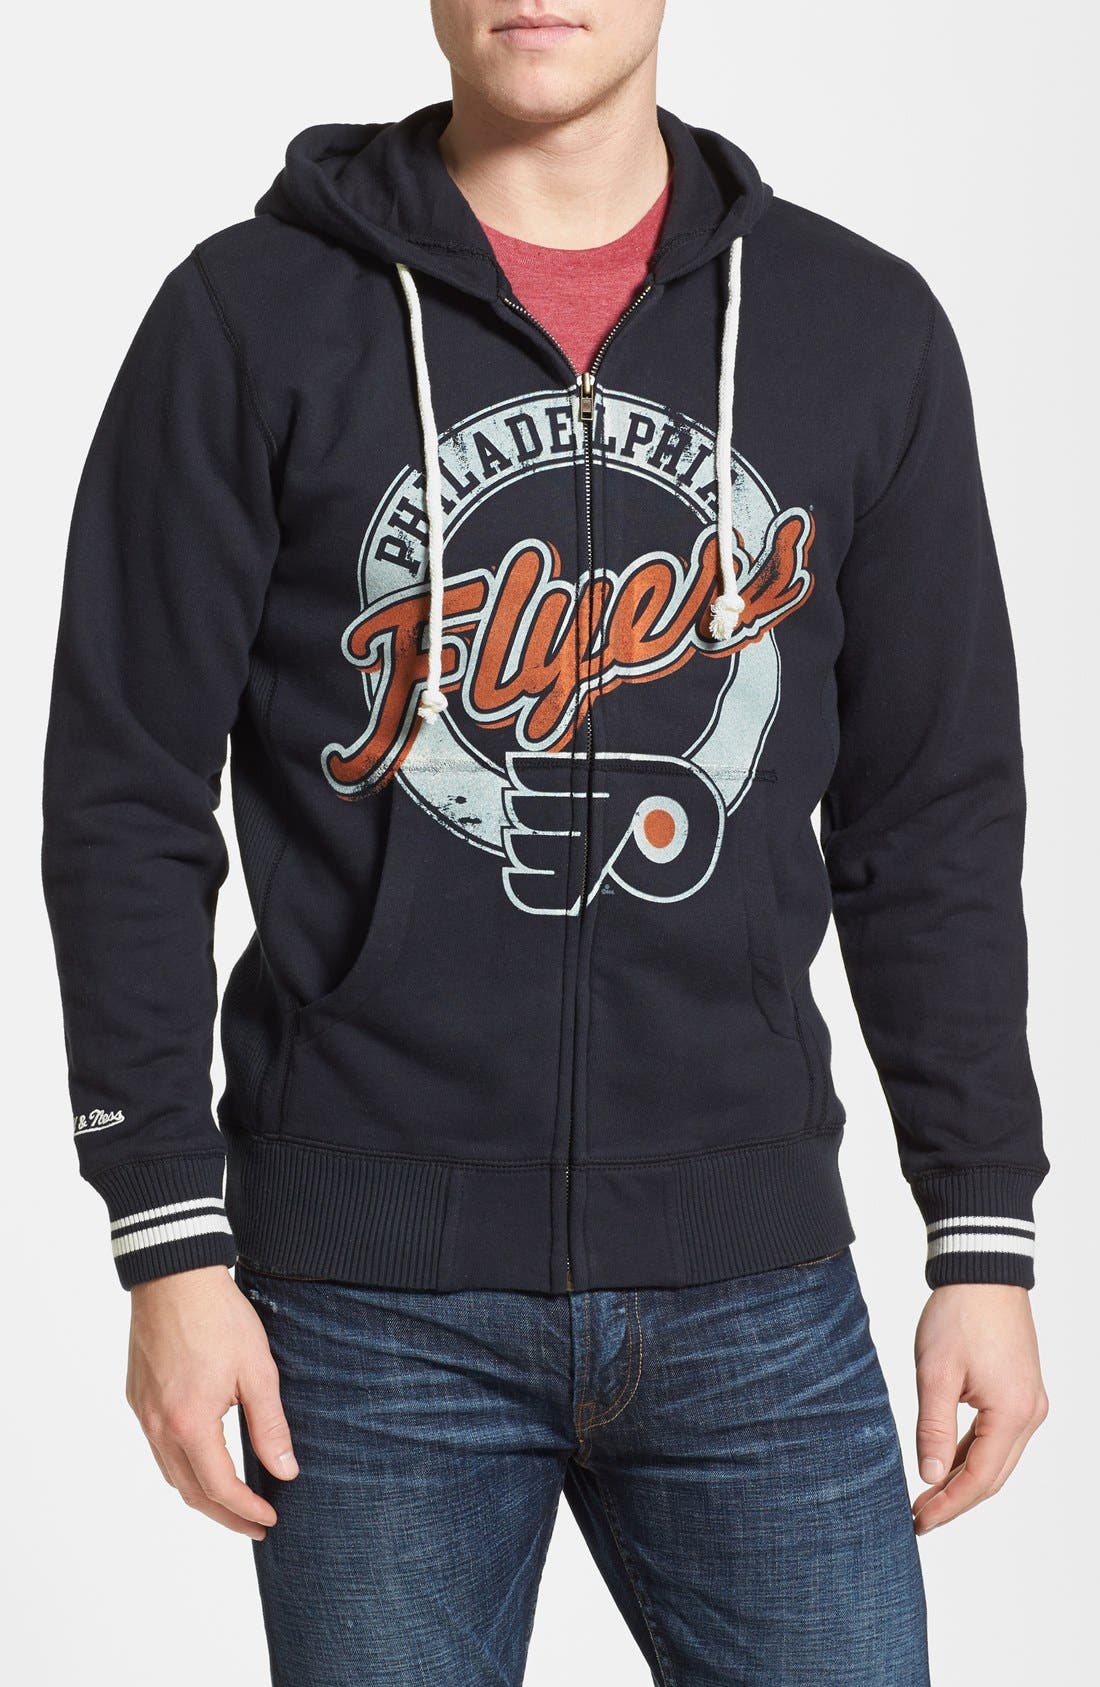 Philadelphia Flyers' Full Zip Hoodie 